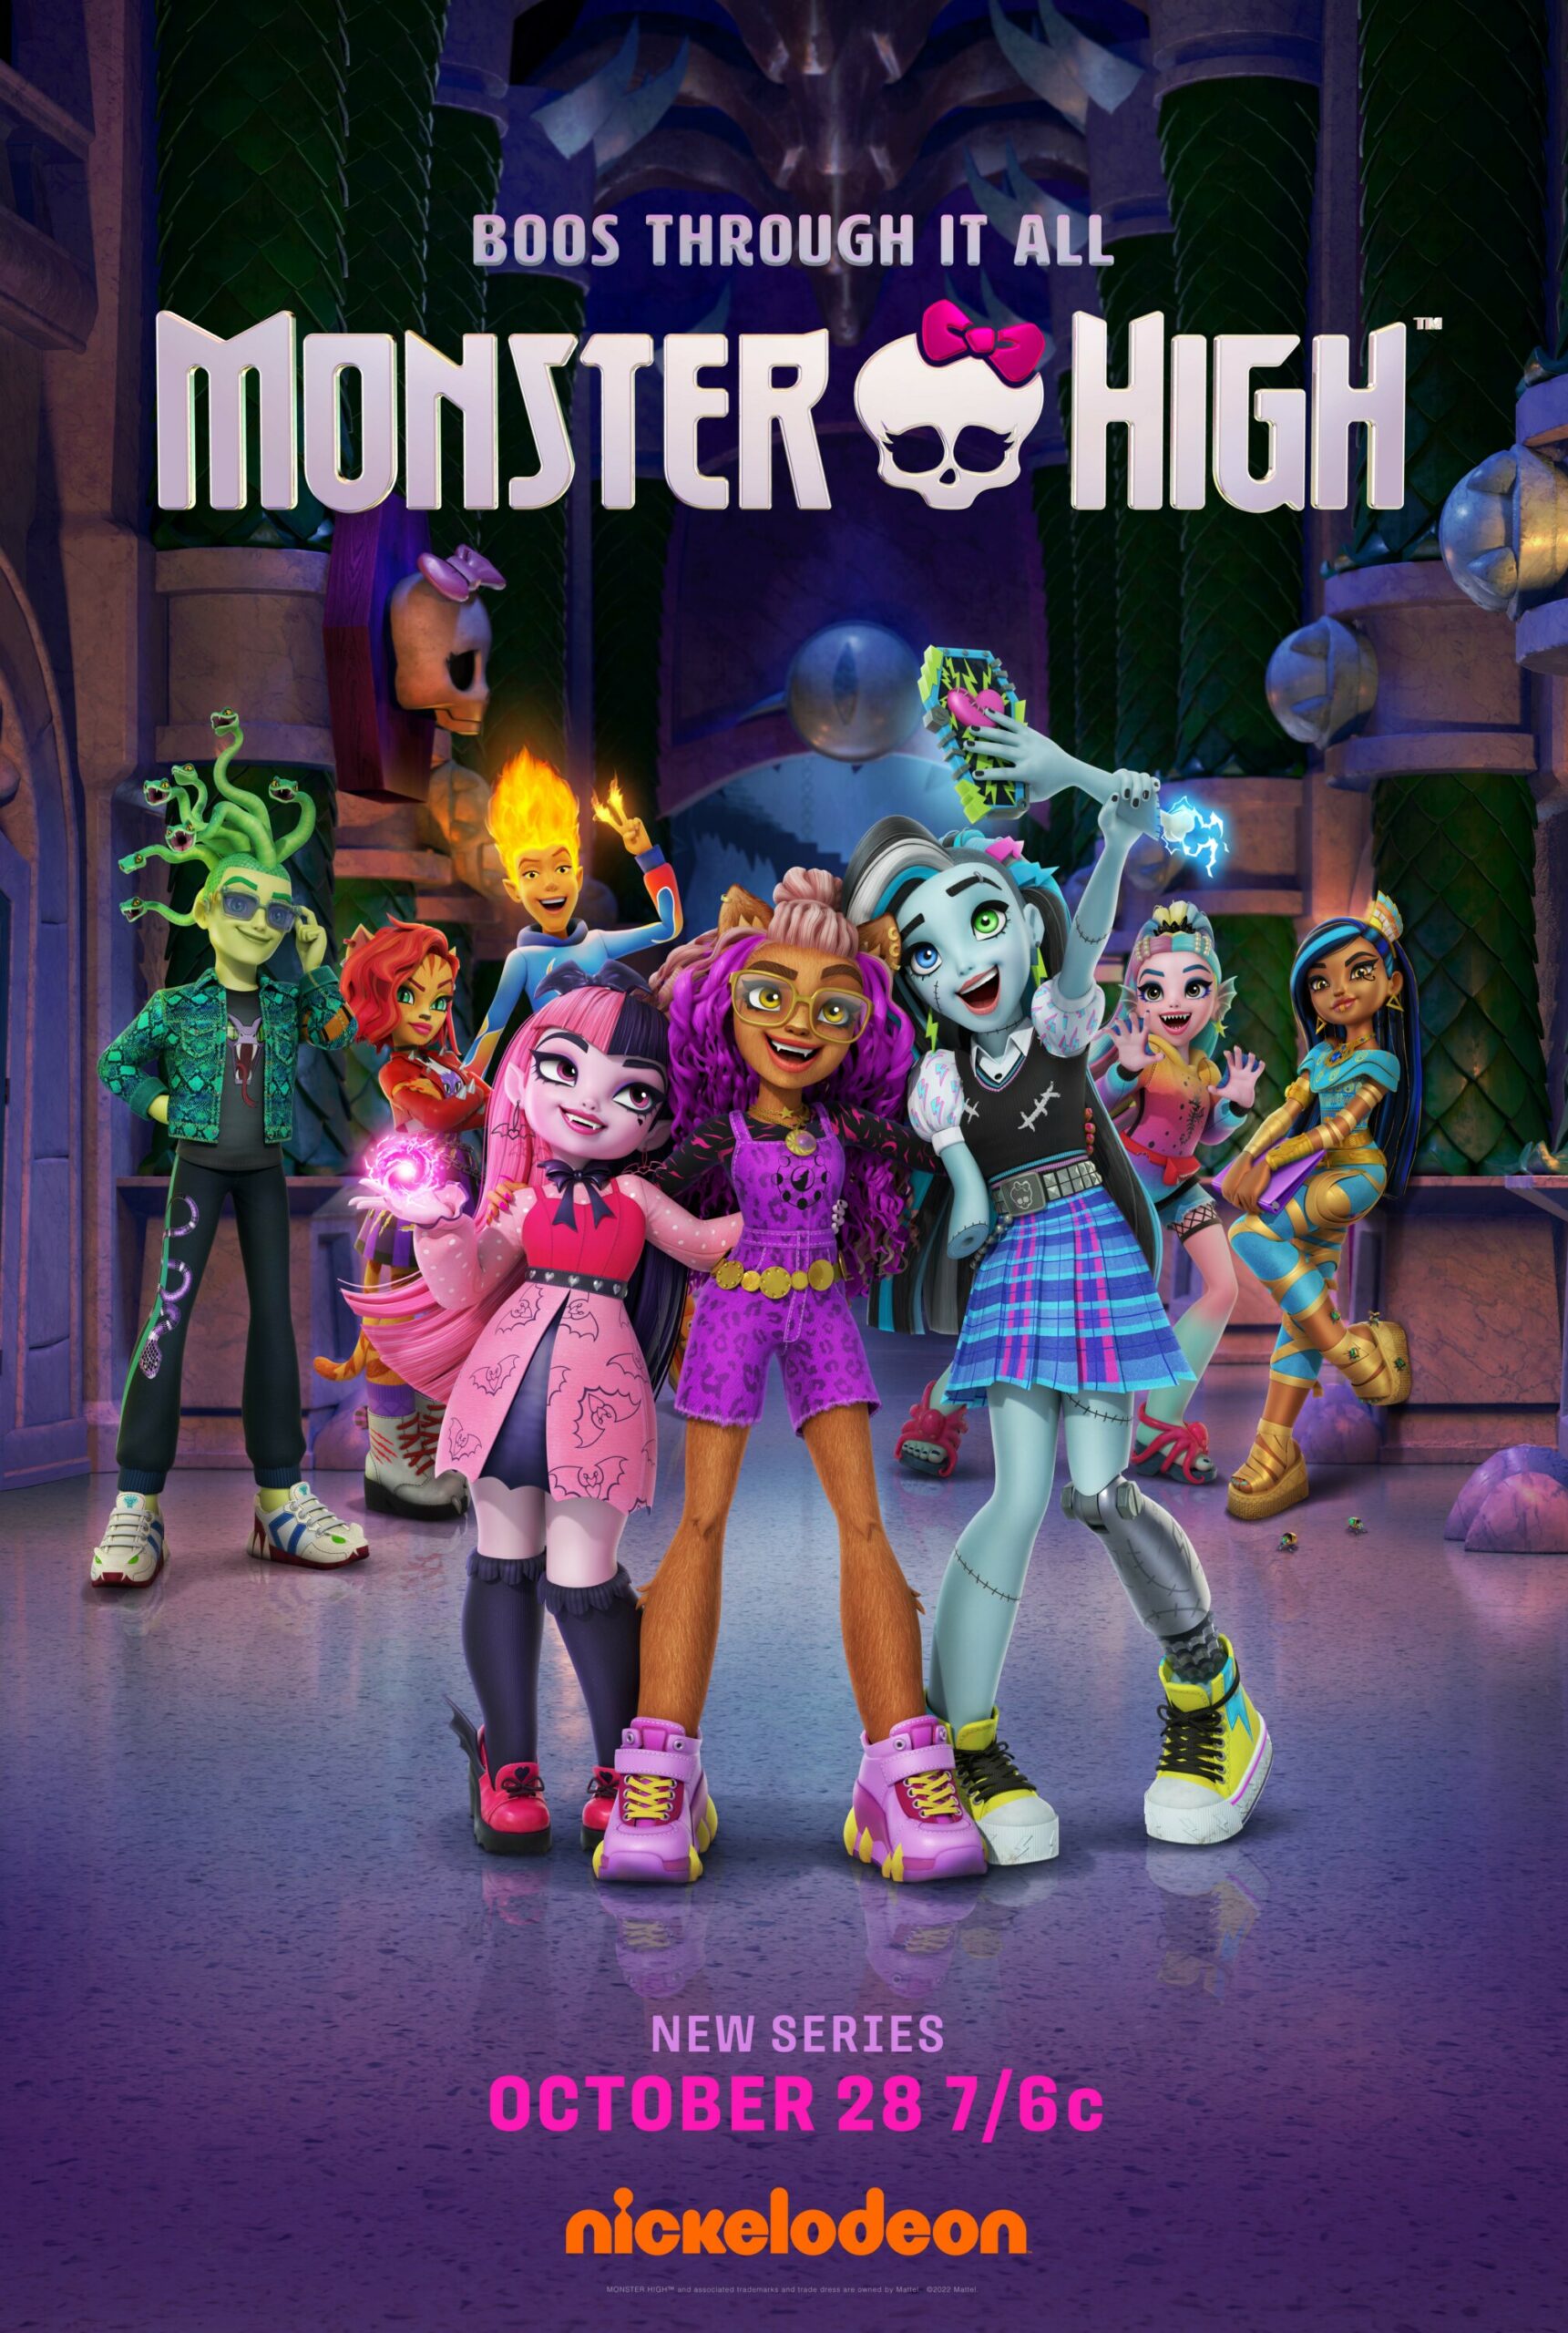 Mattel and Nickelodeon offer sneak peek of Monster High series -